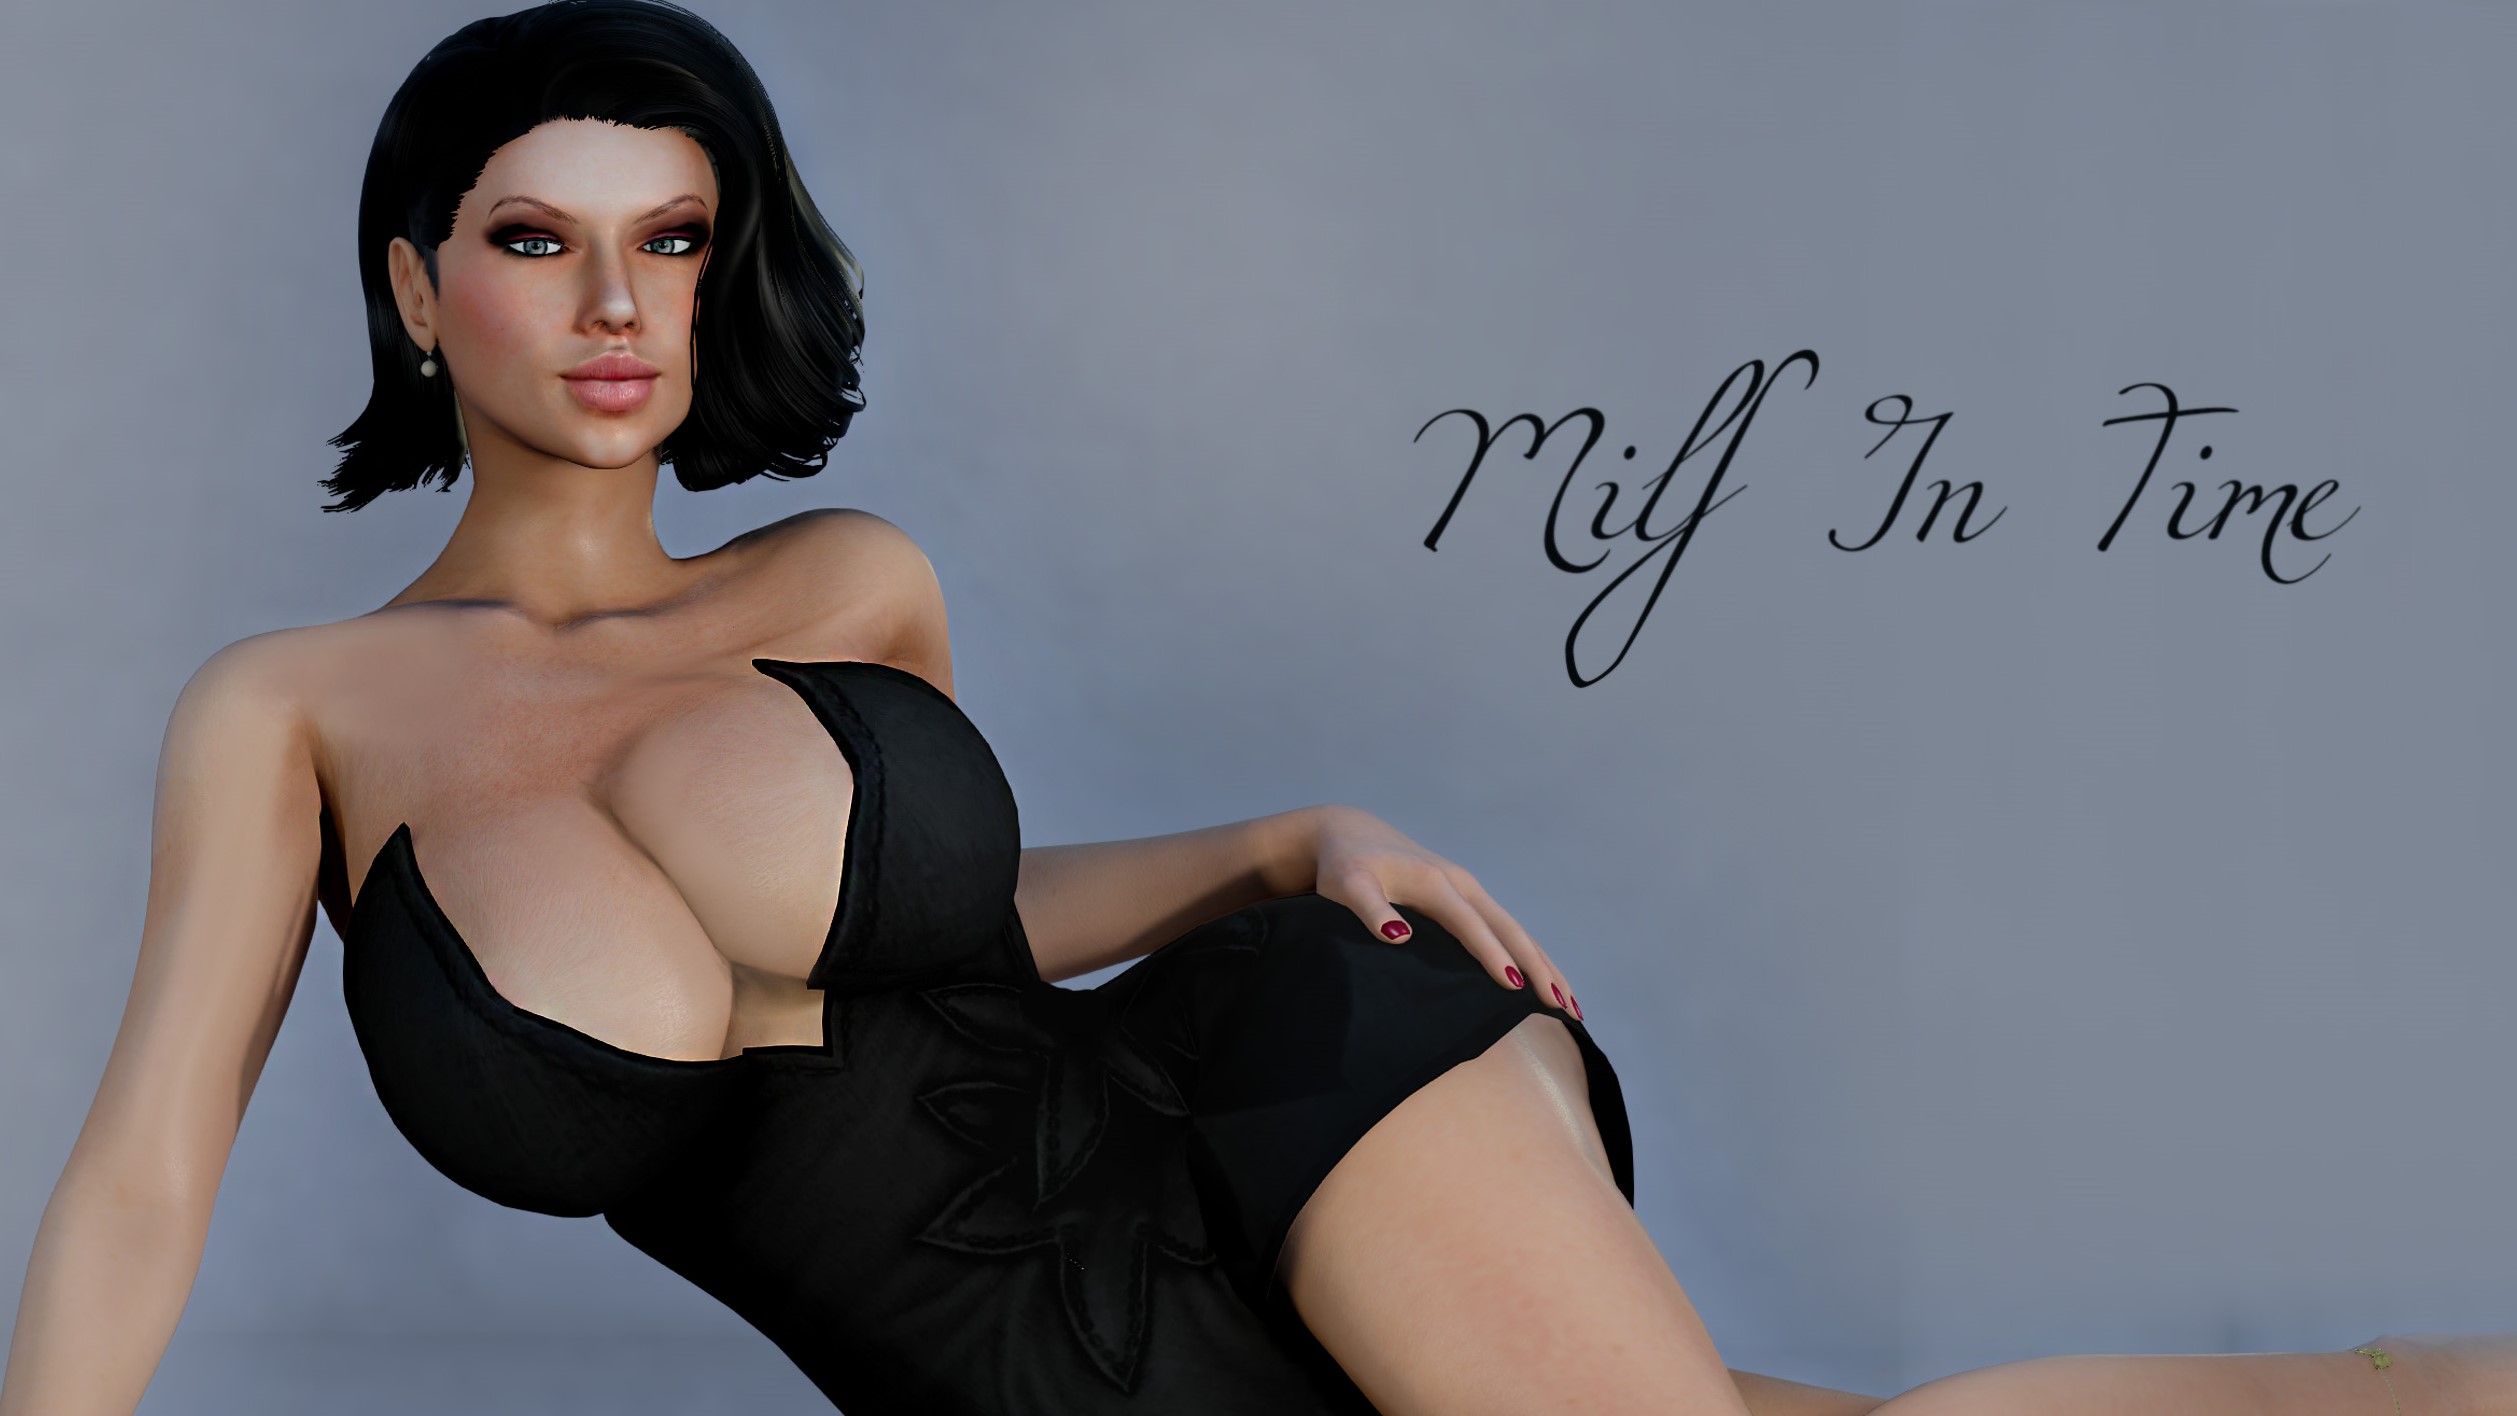 Milf Oornsex - Milf in Time Ren'py Porn Sex Game v.0.1.0 Download for Windows, MacOS, Linux